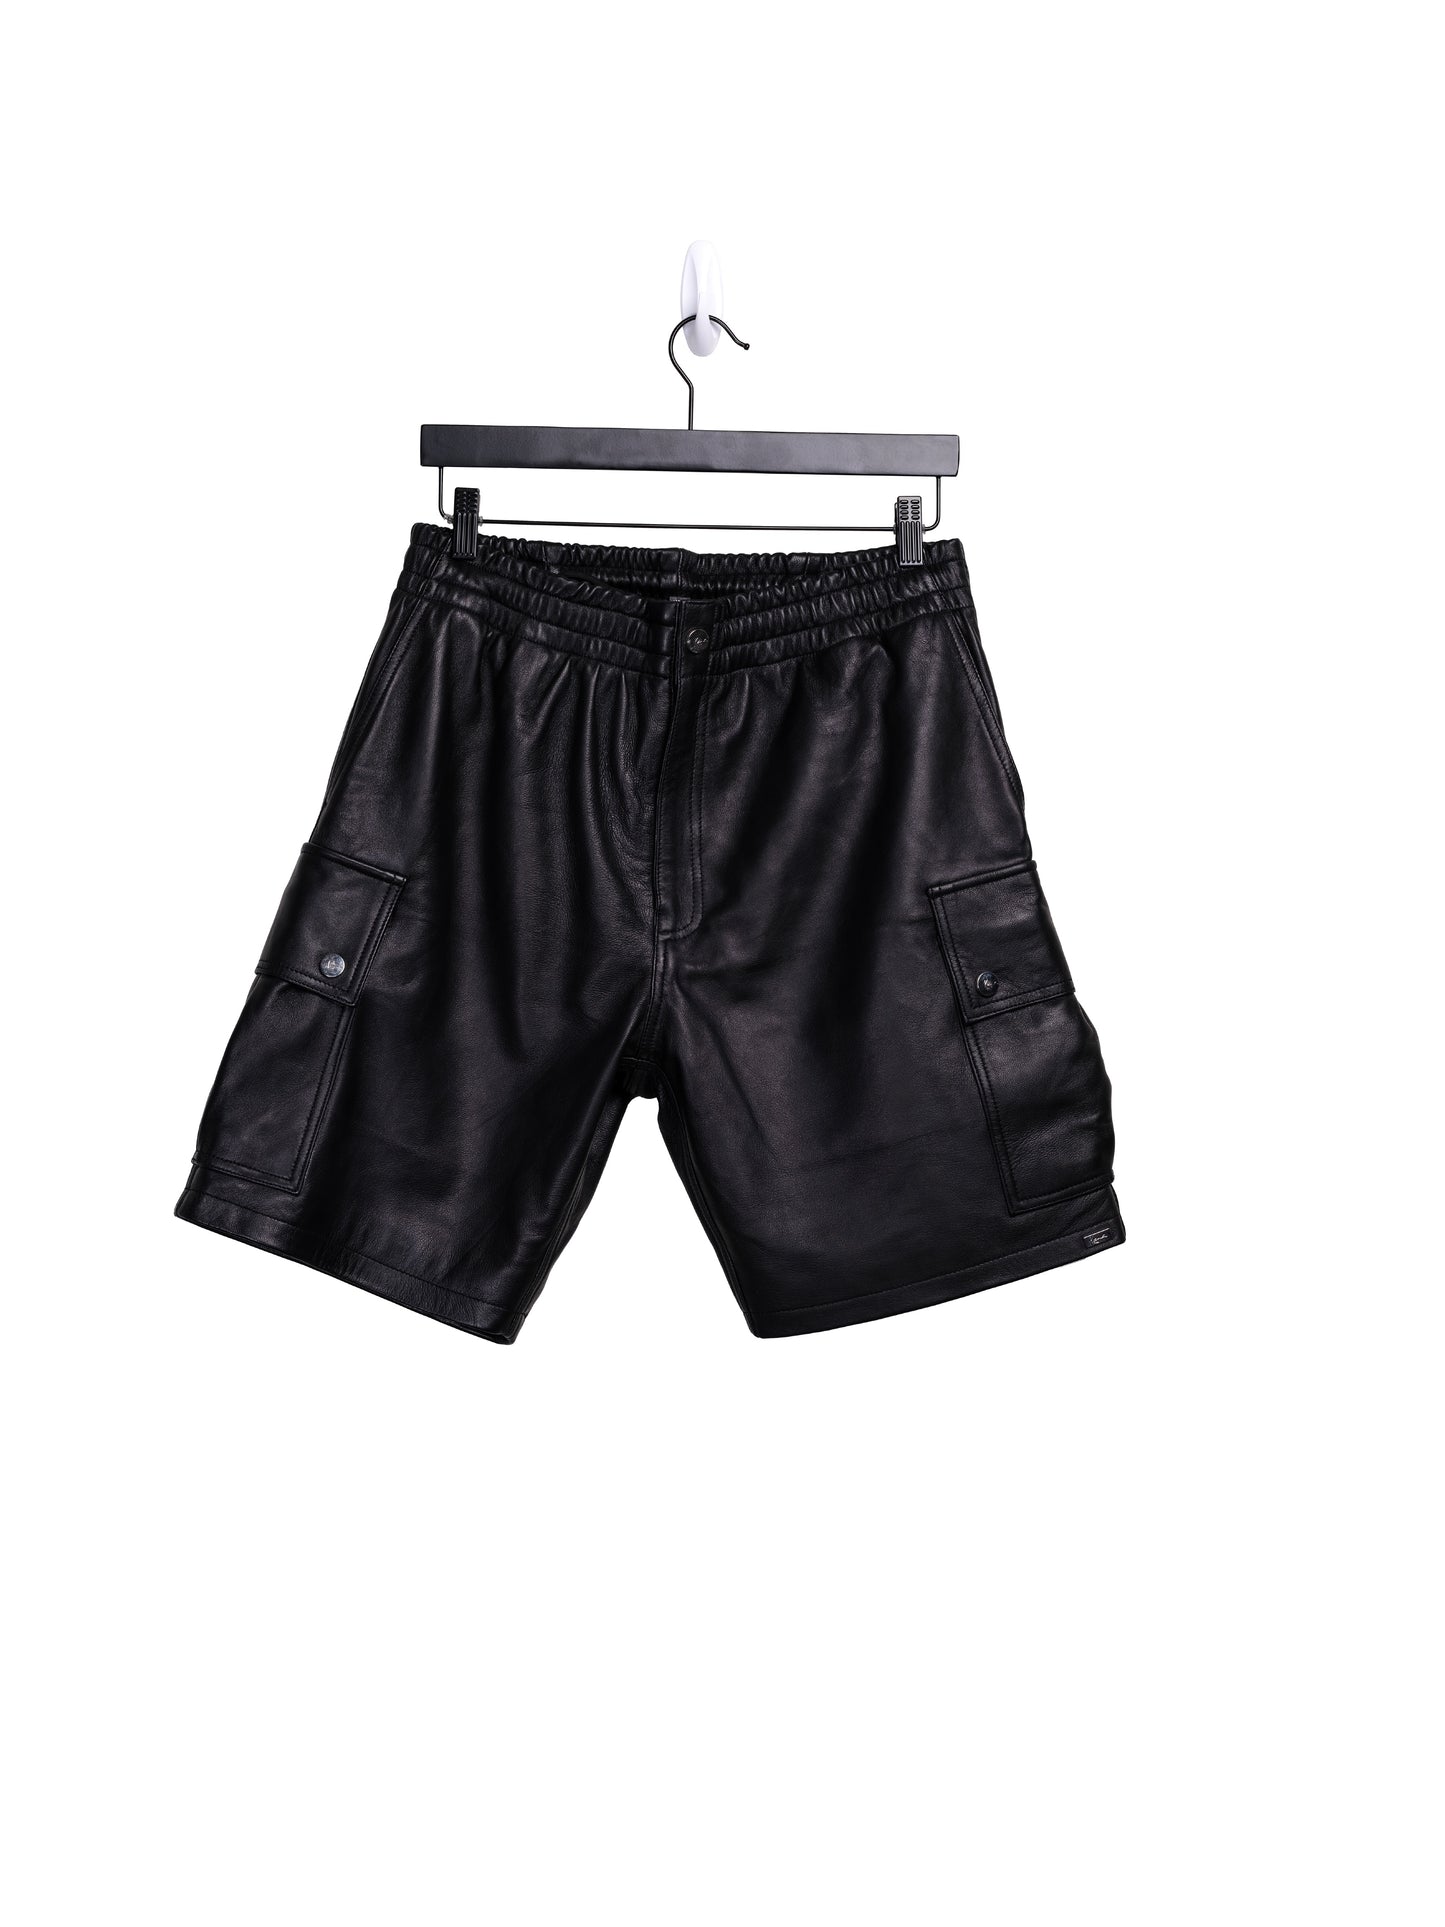 Mace Leather Cargo Shorts (Black)